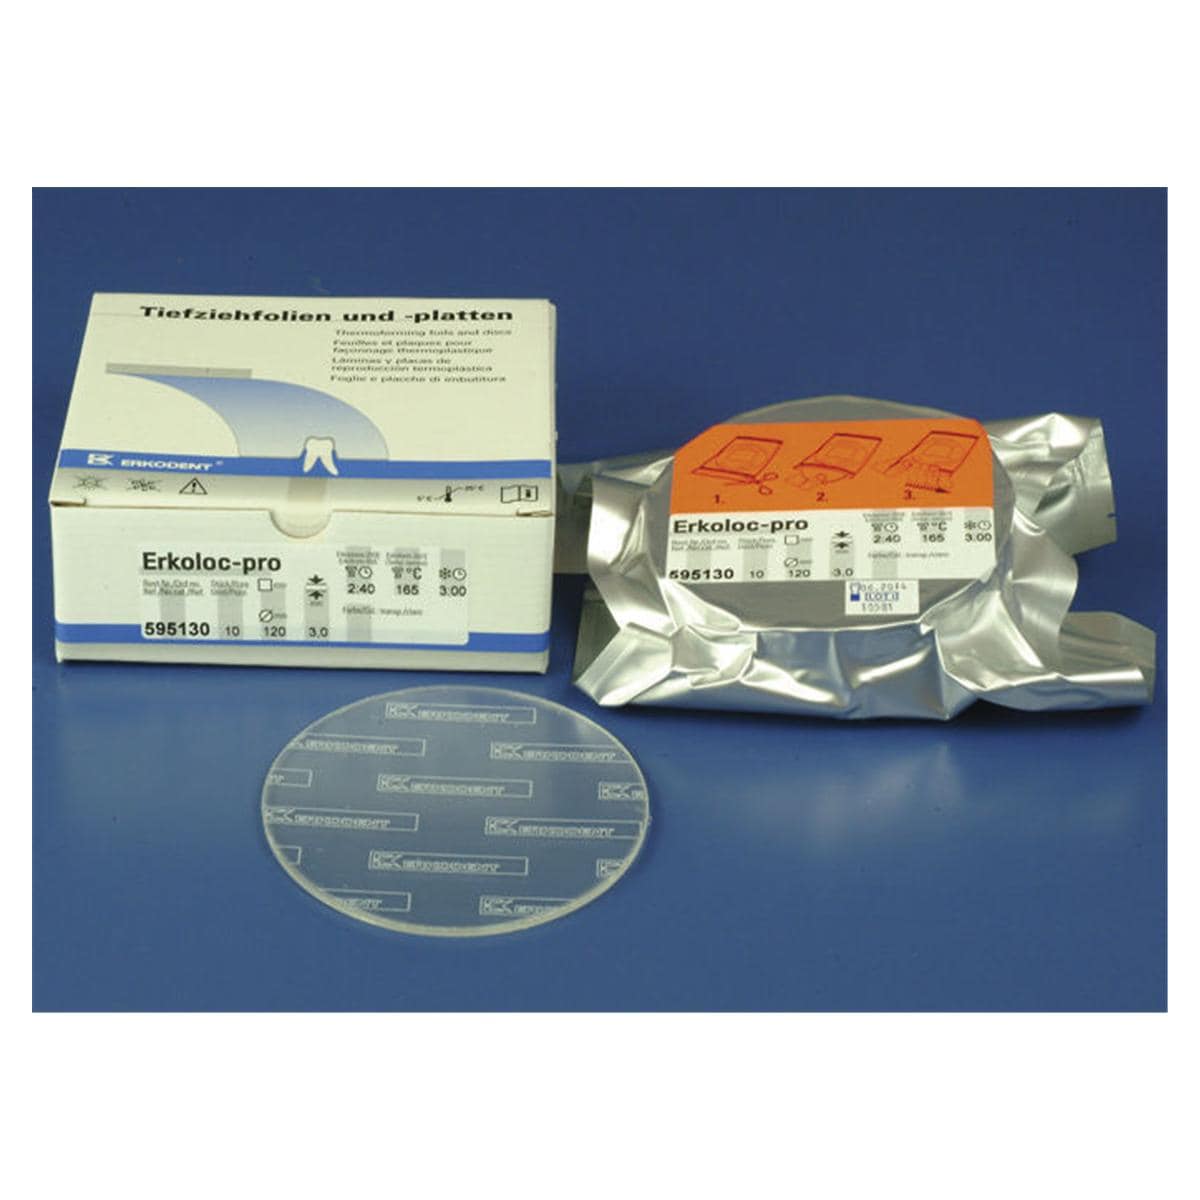 Erkoloc-pro transparant met isoleerfolie  120 mm - Dikte 2 mm, 10 stuks